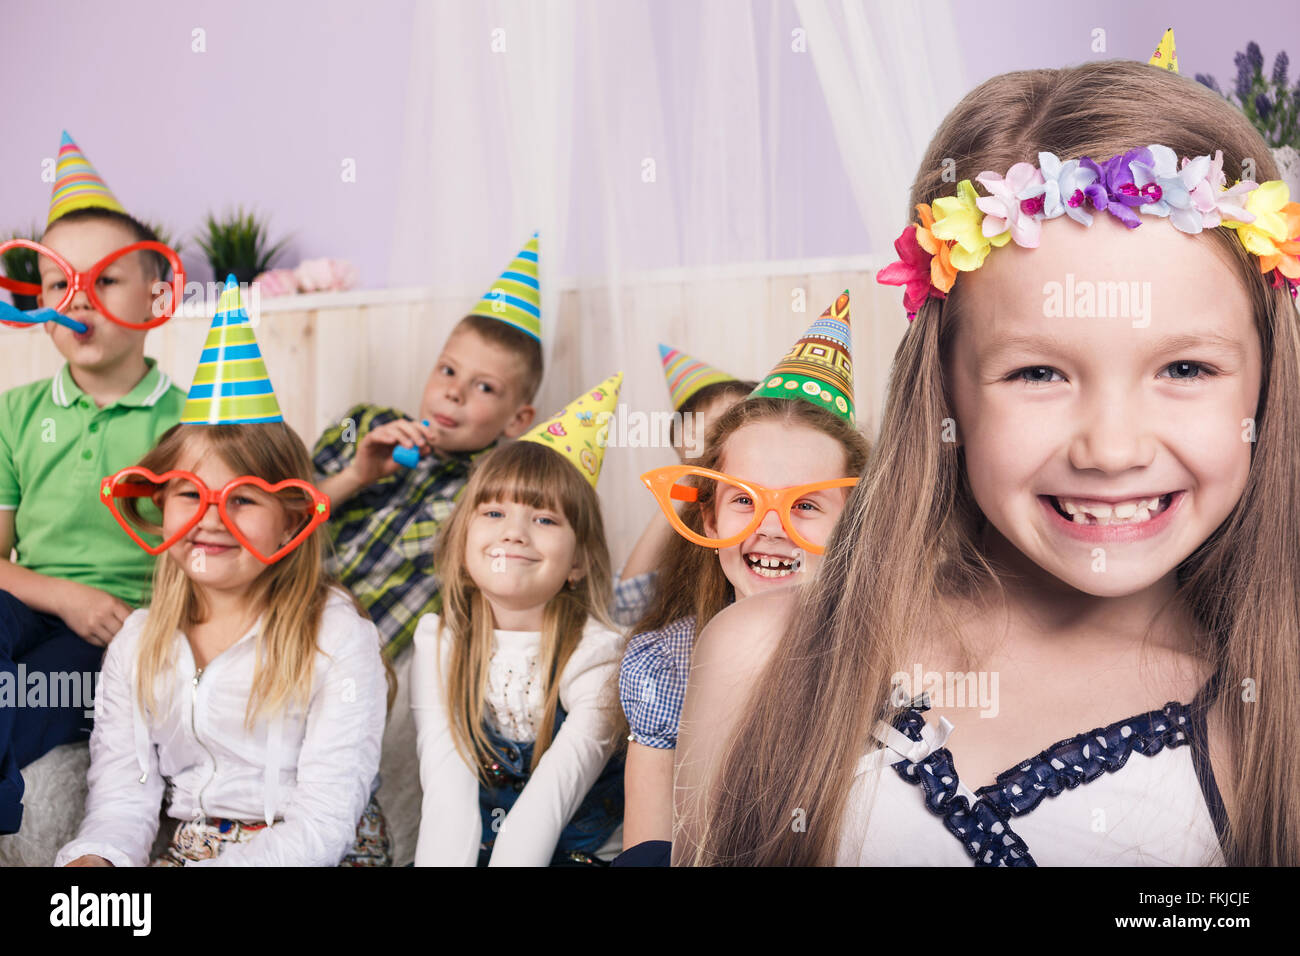 Children celebrating birthday Stock Photo